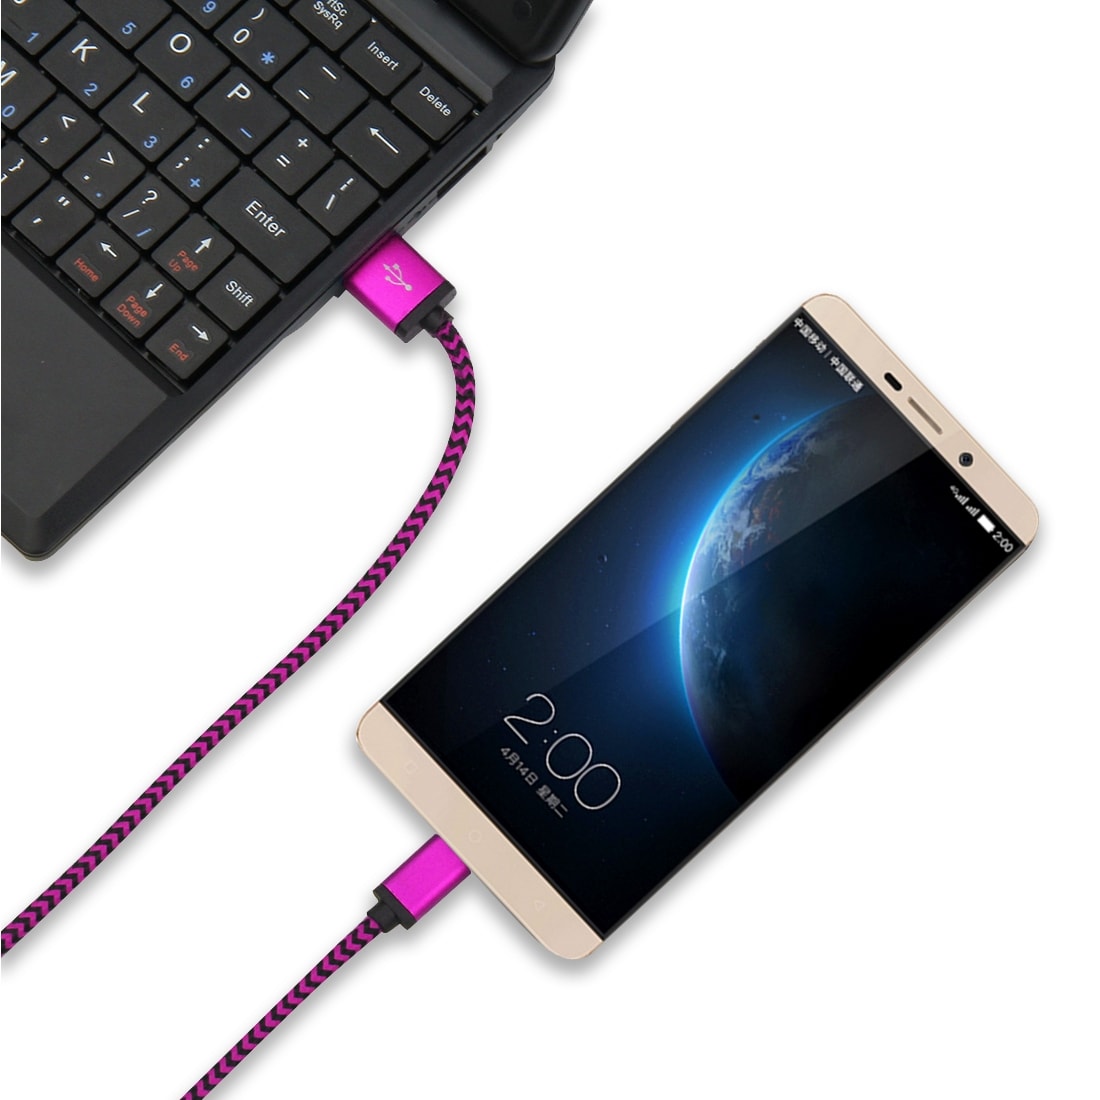 Robust stoffkledd Usbkabel Usbkabel USB typ C med metallhode - Storpakk 5stk i ulike farger